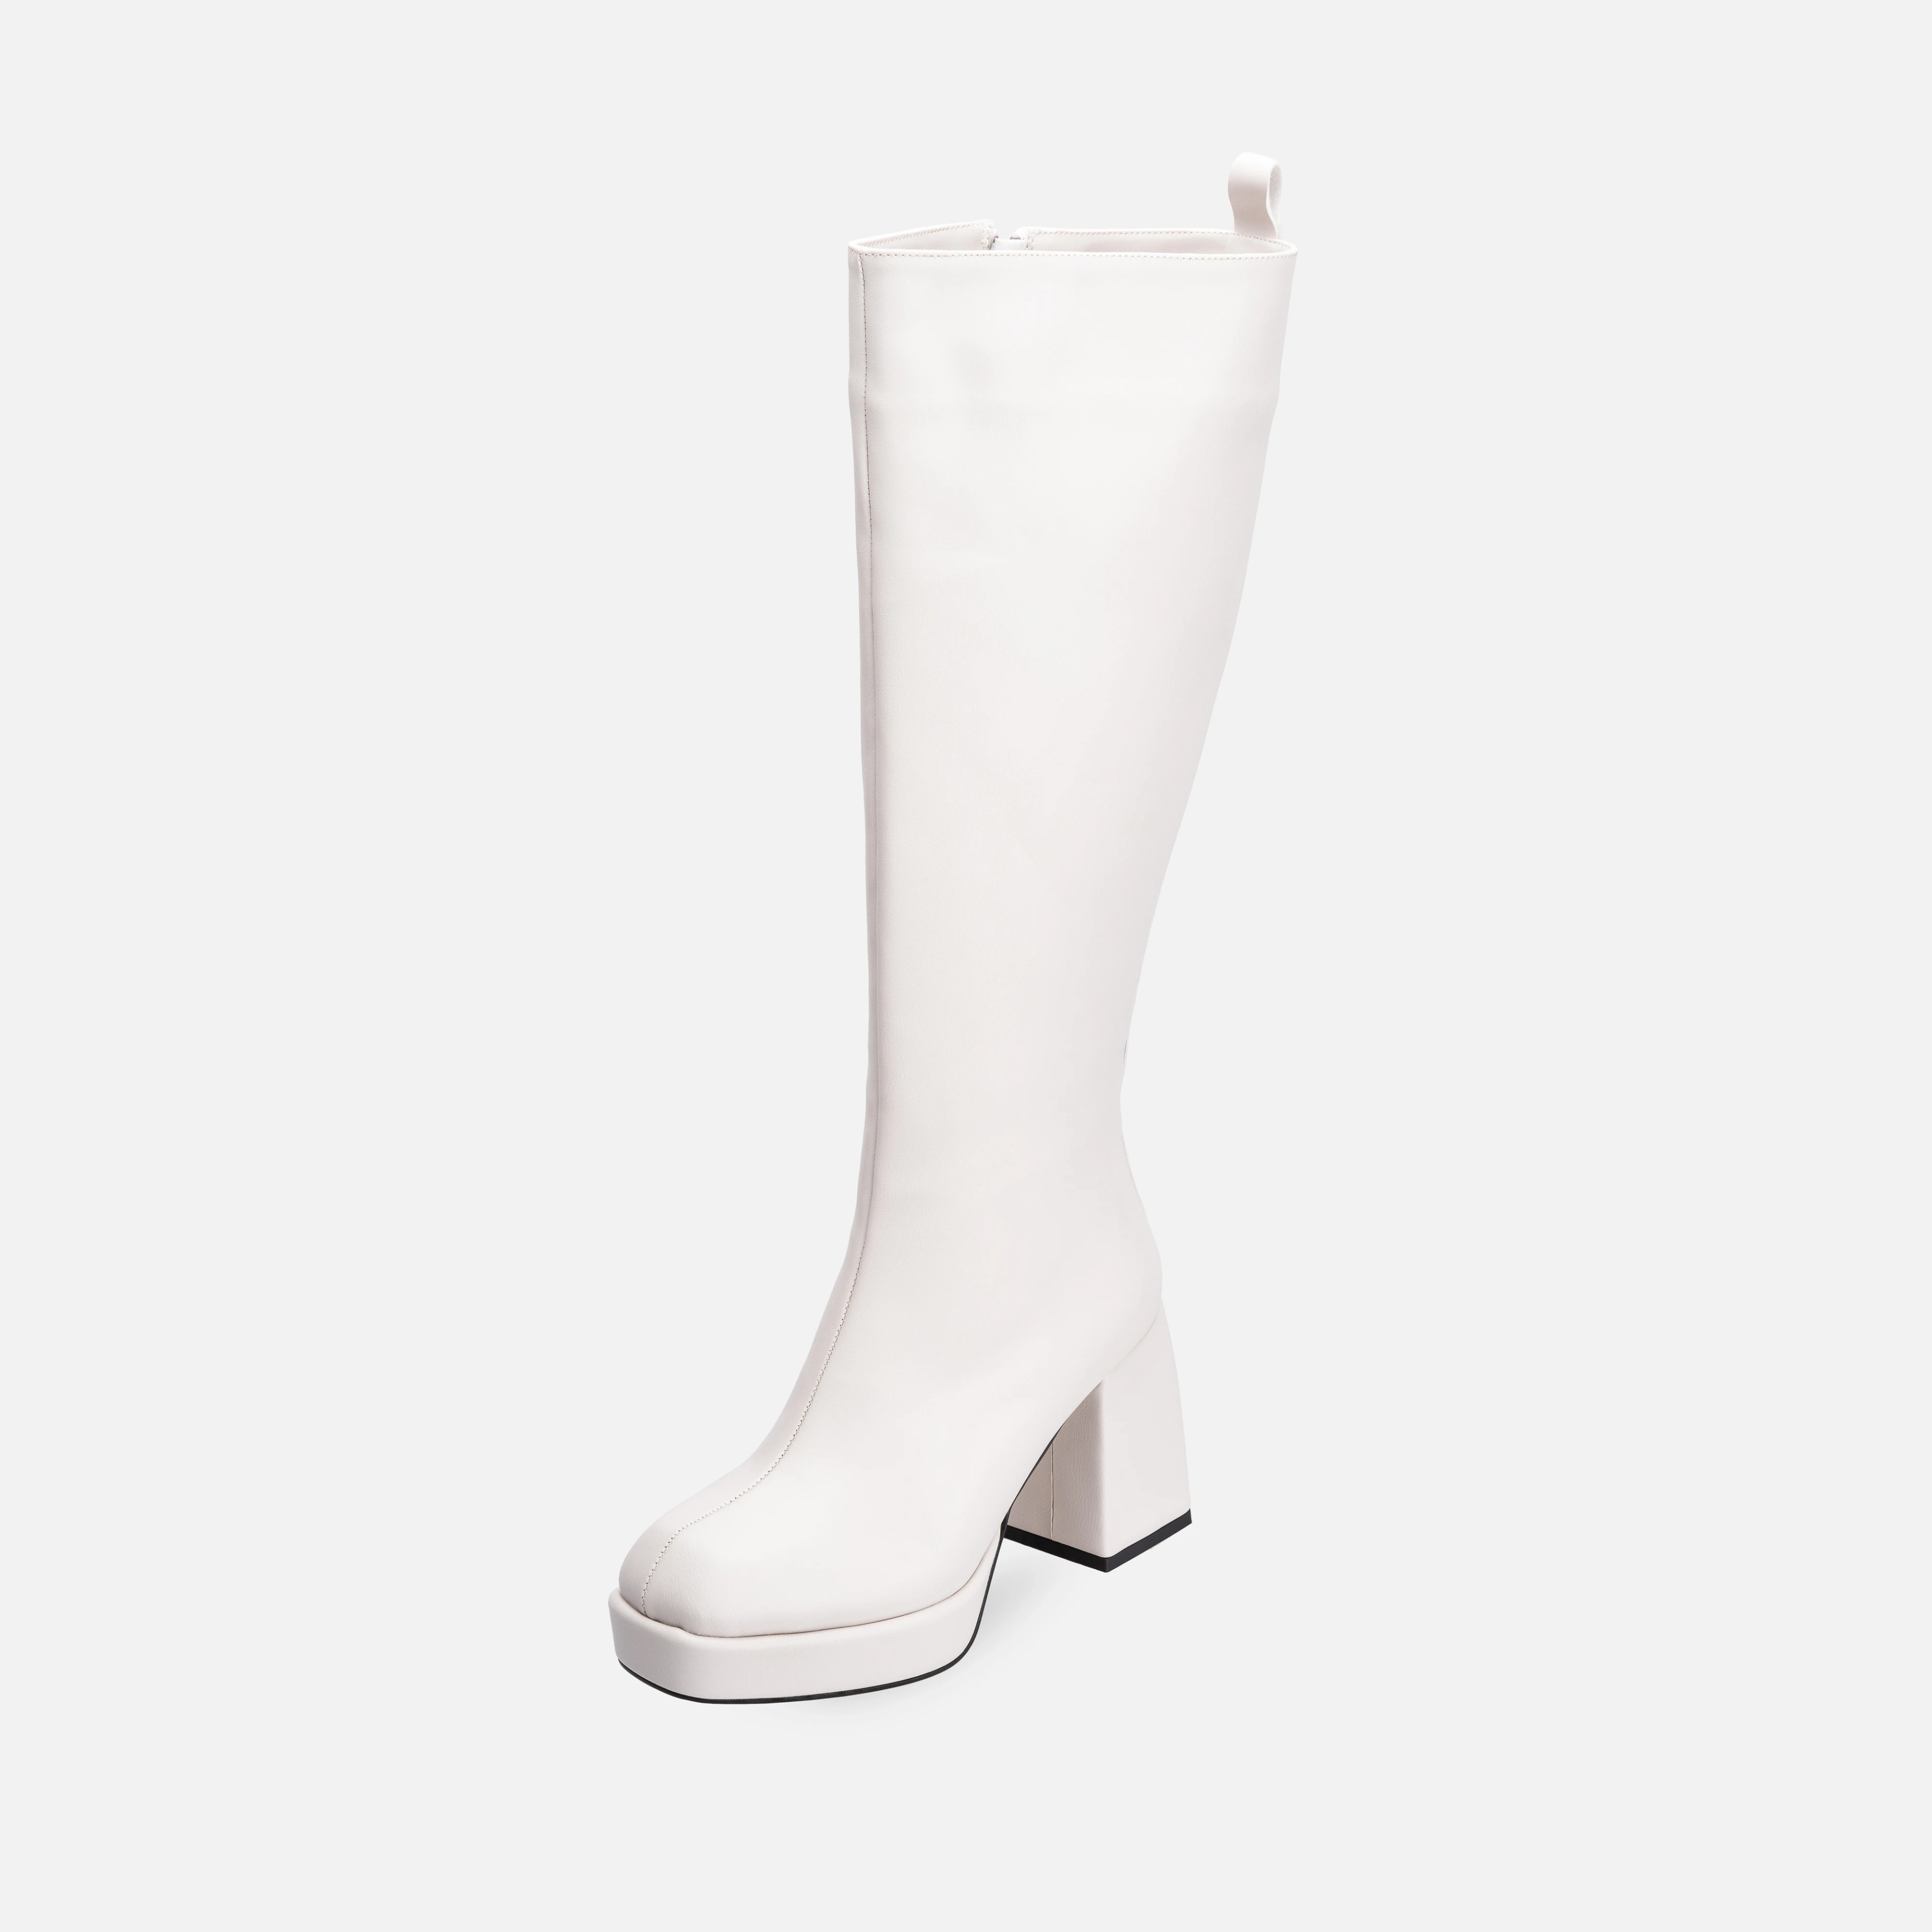 Natalie Platform Topuklu Çizme Kırık Beyaz